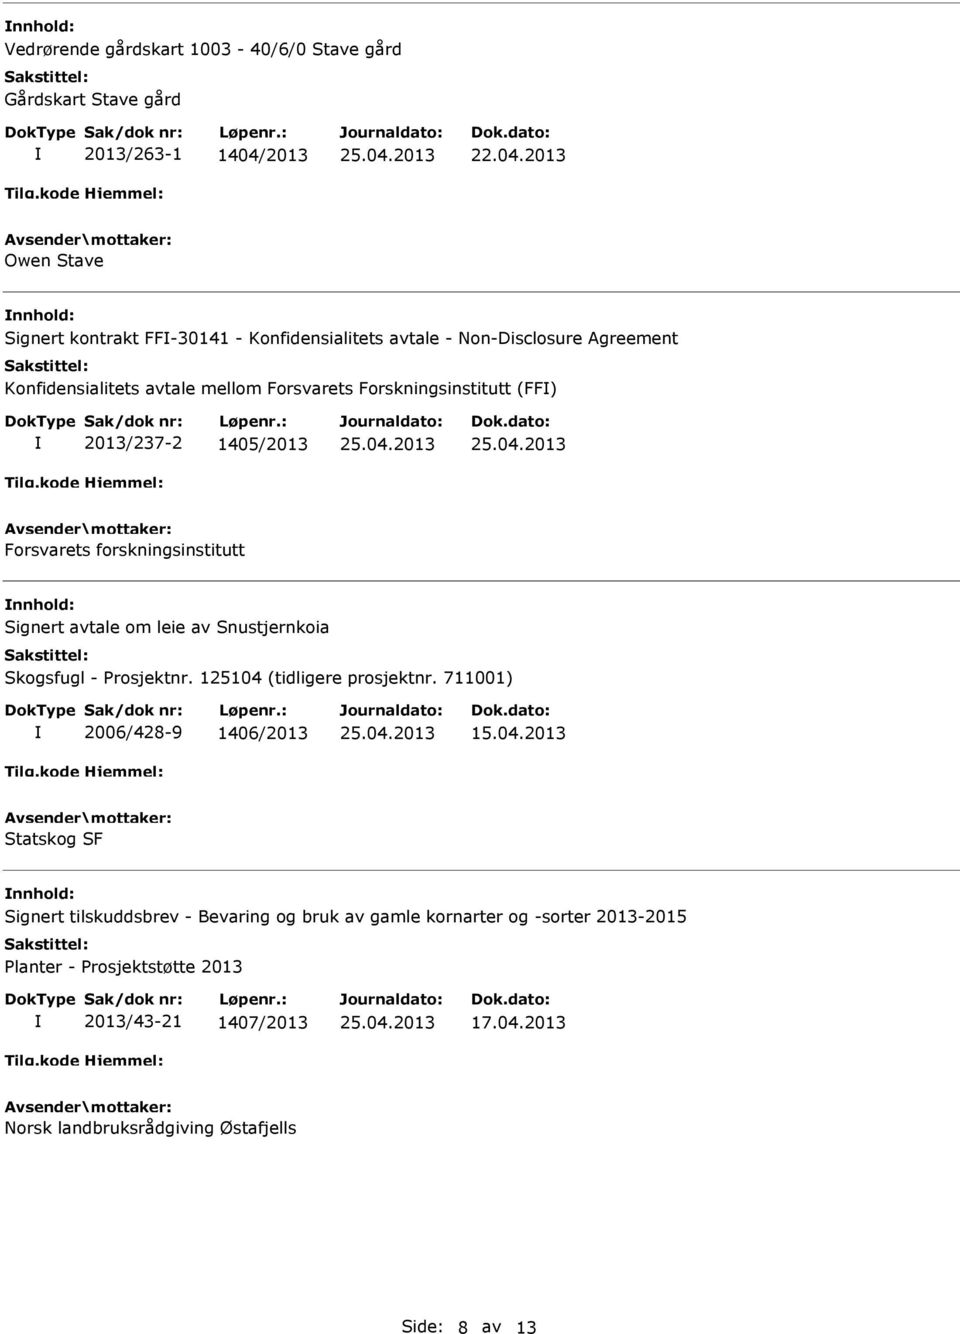 avtale om leie av Snustjernkoia Skogsfugl - Prosjektnr. 125104 